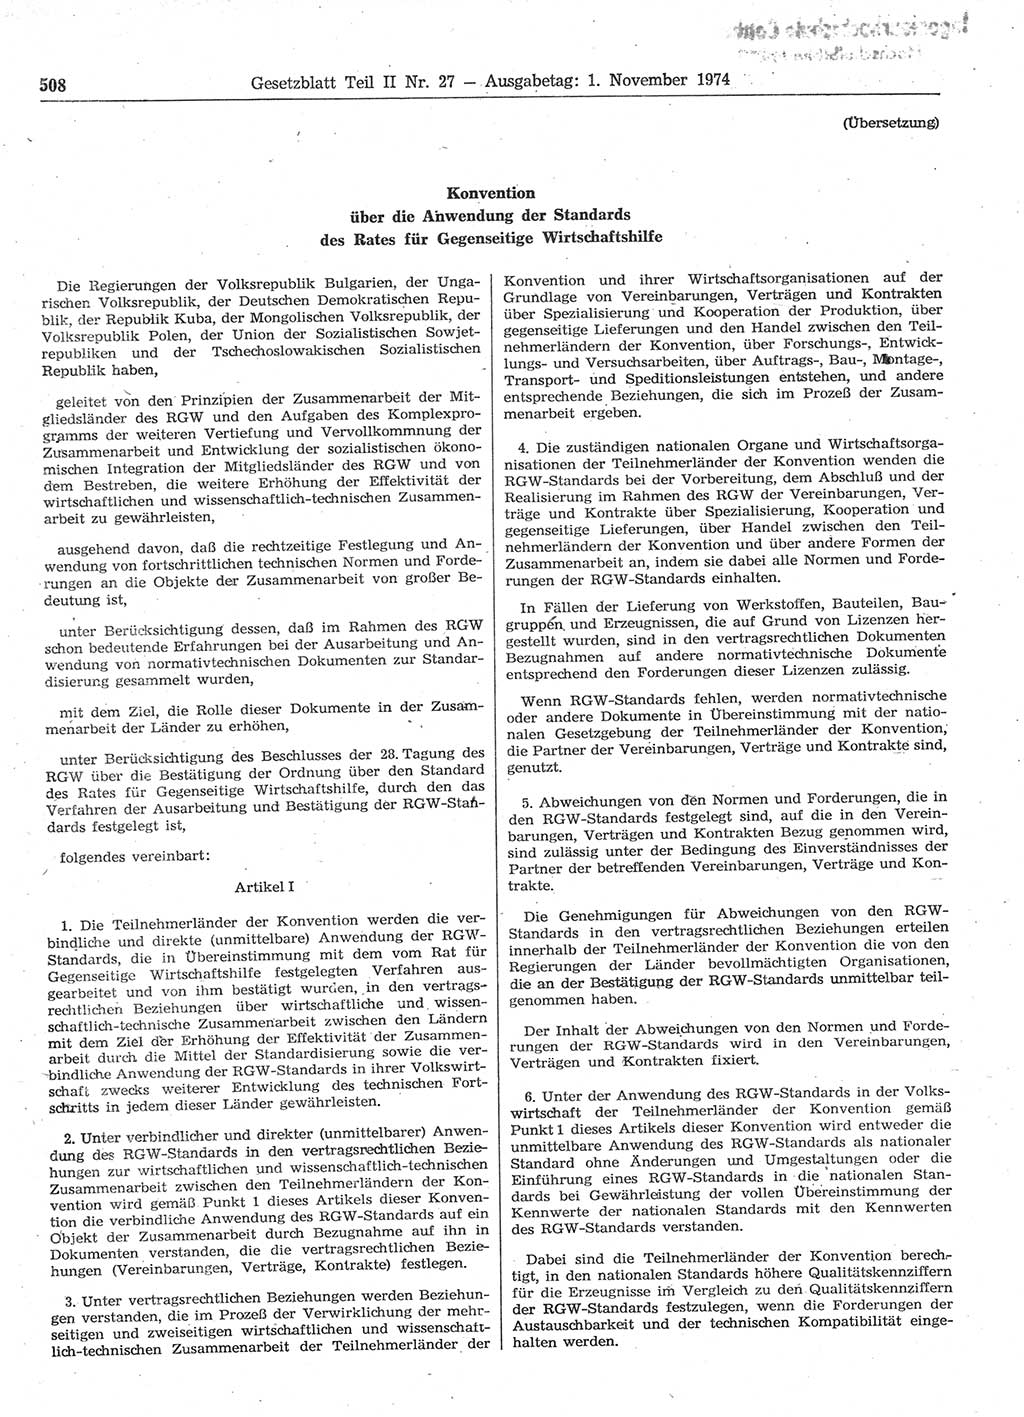 Gesetzblatt (GBl.) der Deutschen Demokratischen Republik (DDR) Teil ⅠⅠ 1974, Seite 508 (GBl. DDR ⅠⅠ 1974, S. 508)